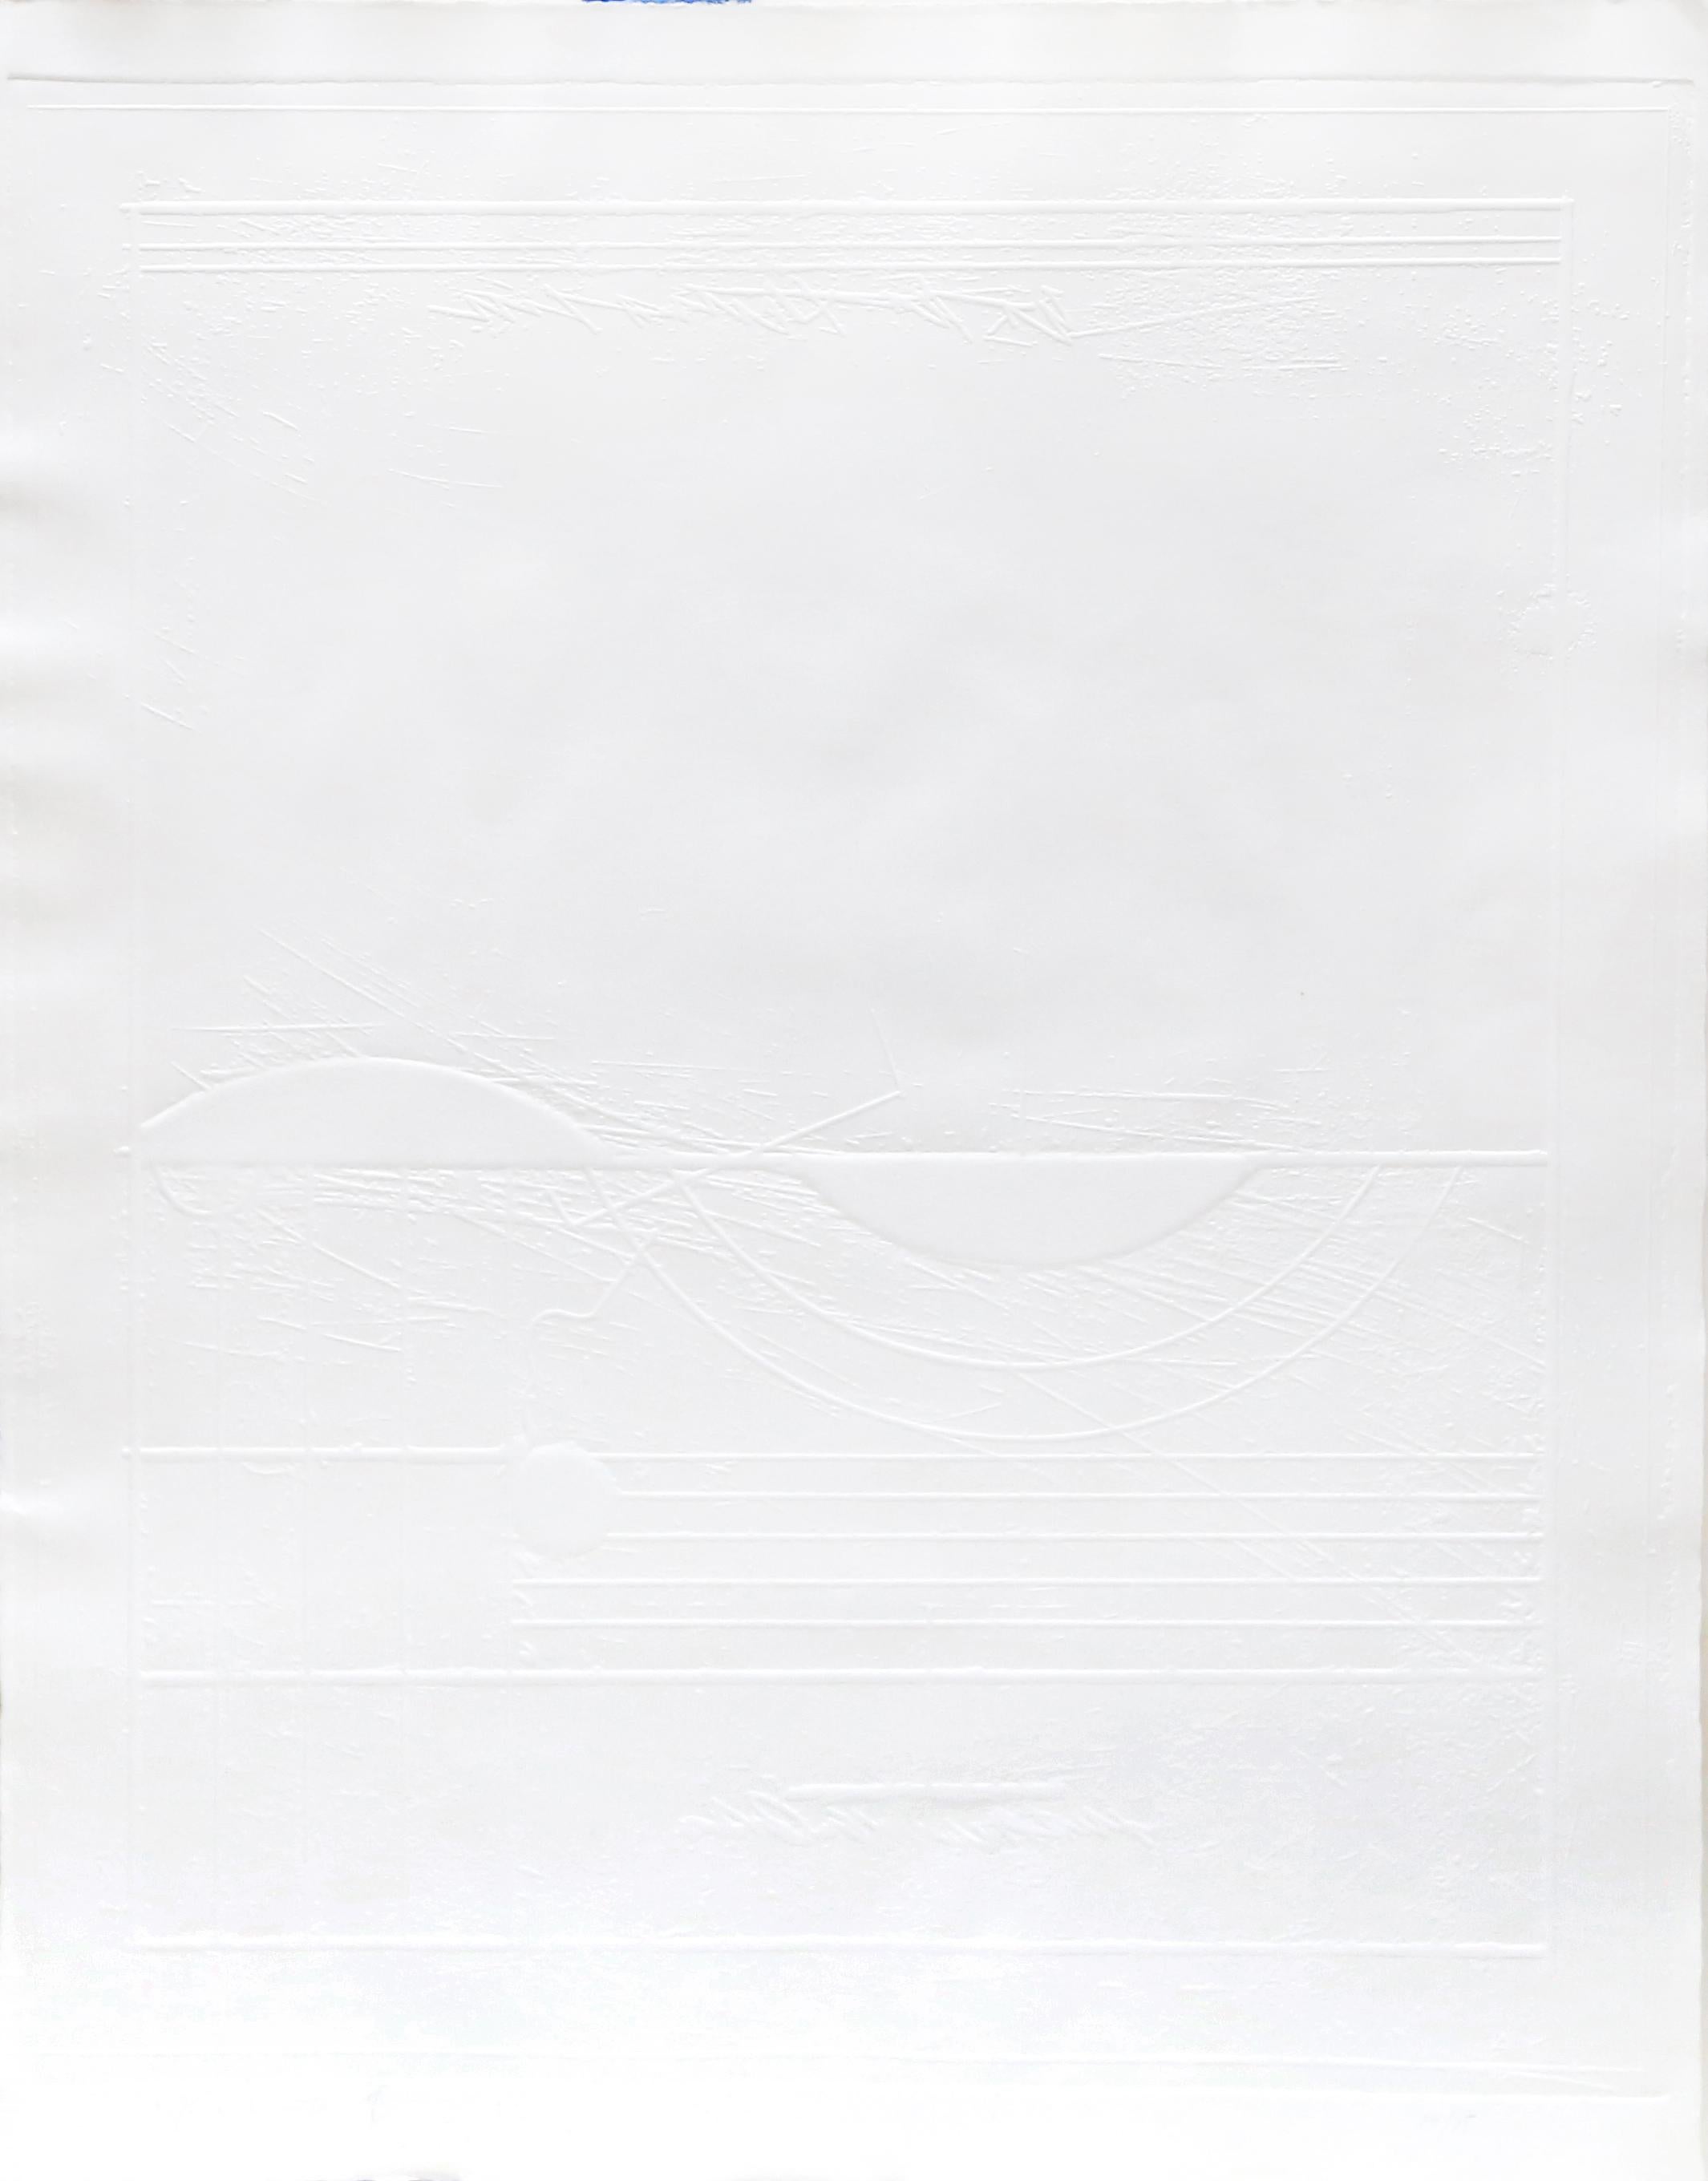 Schlomo Koren Abstract Print - Untitled V, Minimalist Intaglio Print by Shlomo Koren